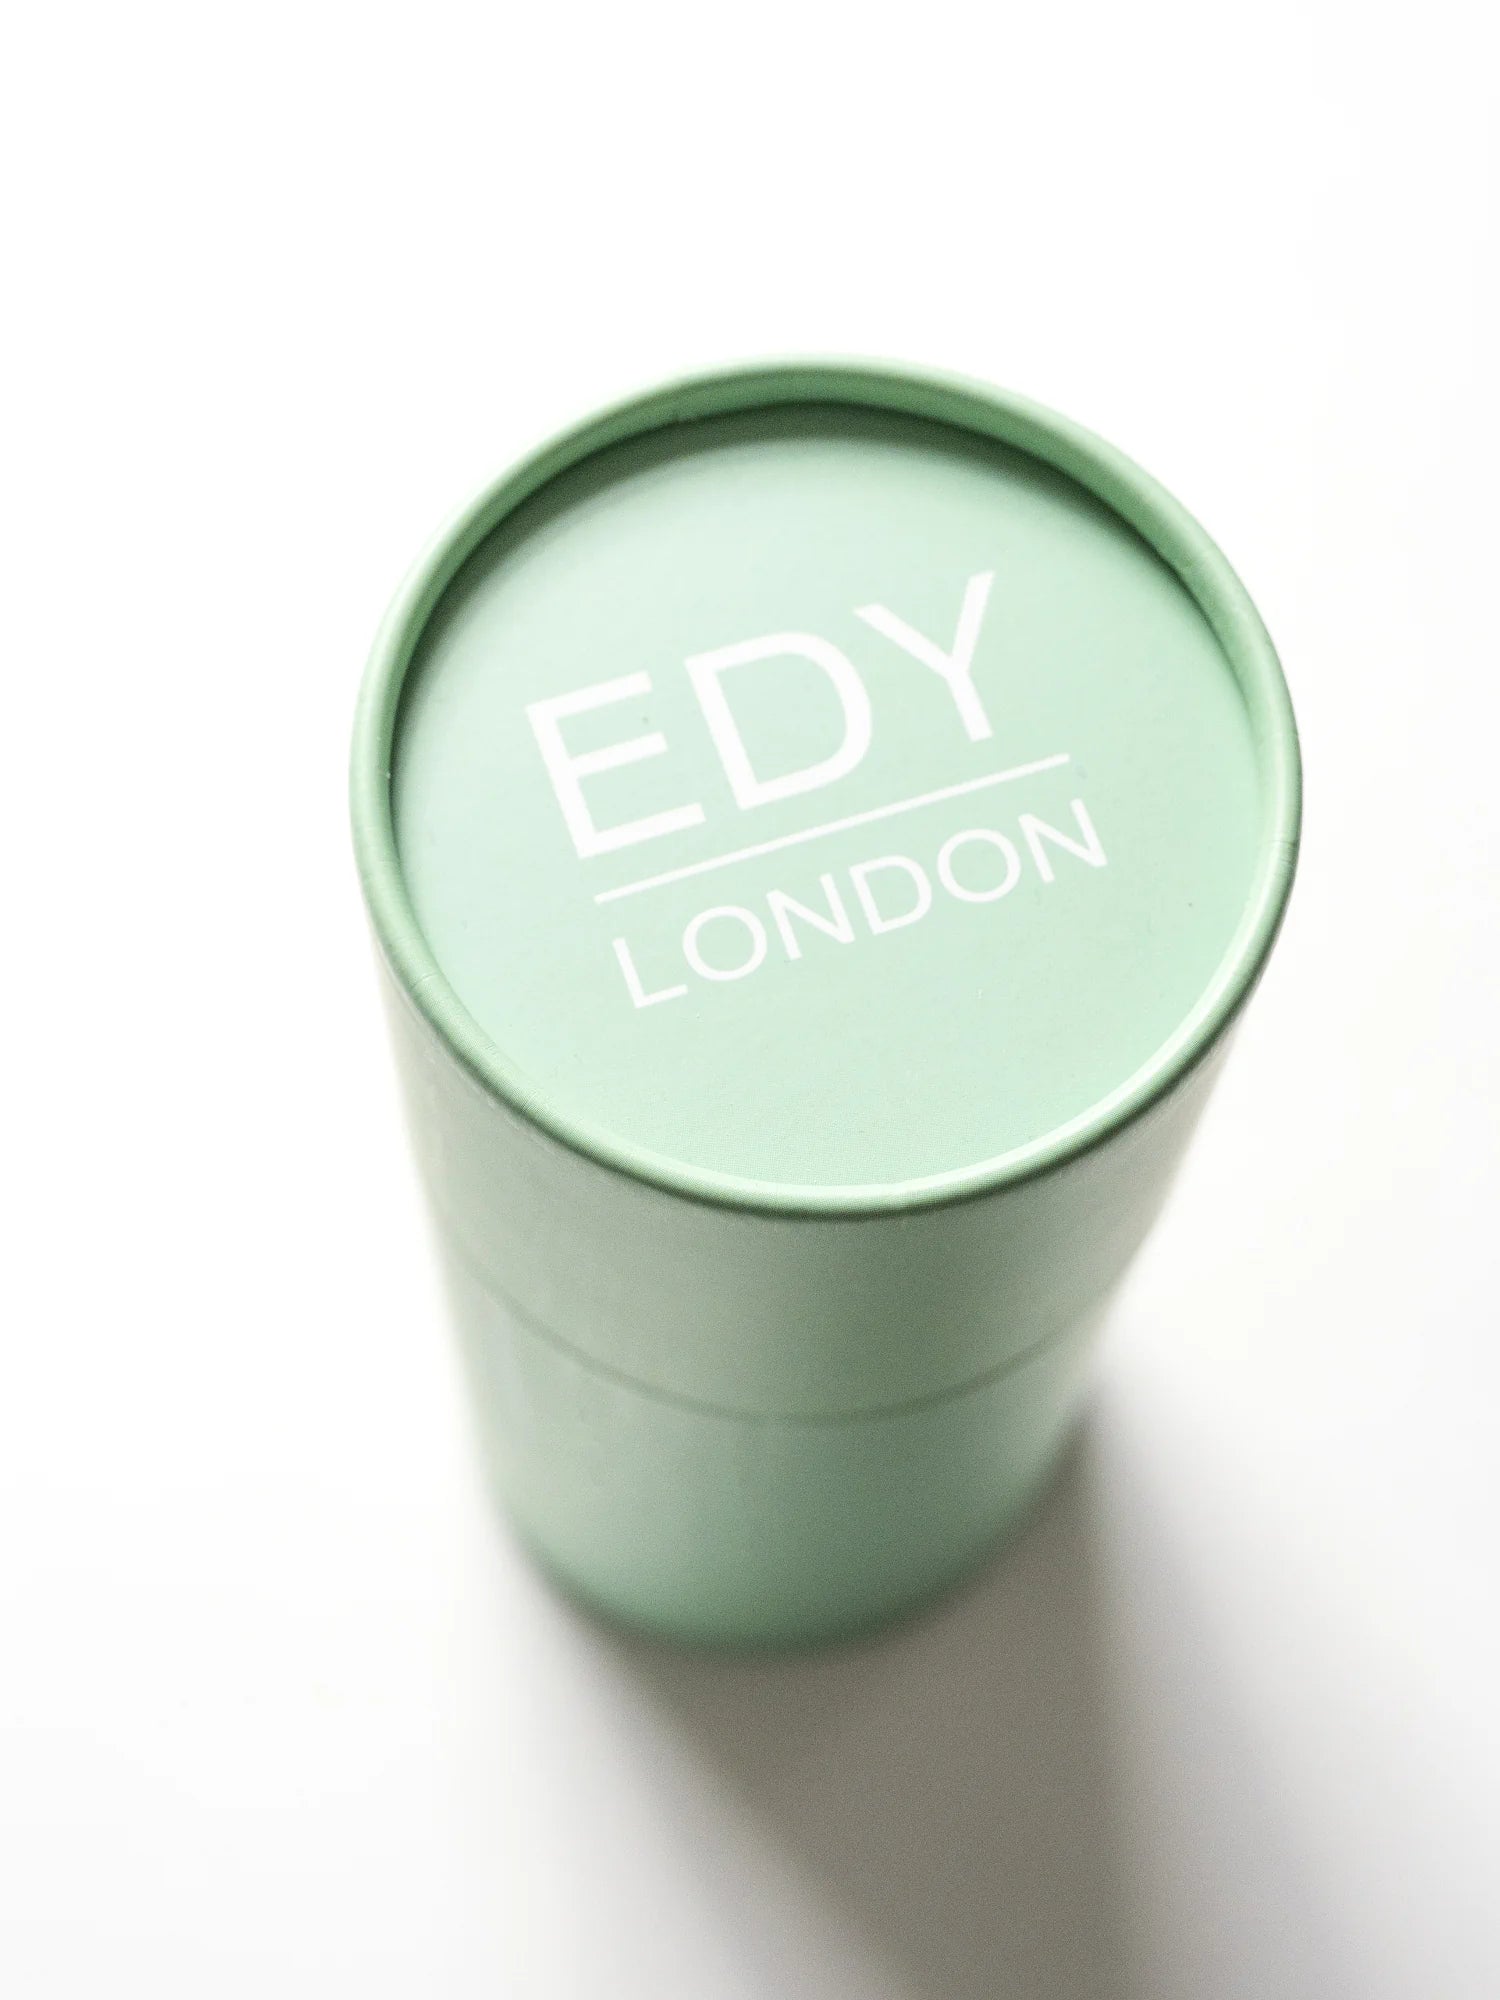 Master Set 509 Make-up Brush EDY LONDON    - EDY LONDON PRODUCTS UK - The Best Makeup Brushes - shop.edy.london